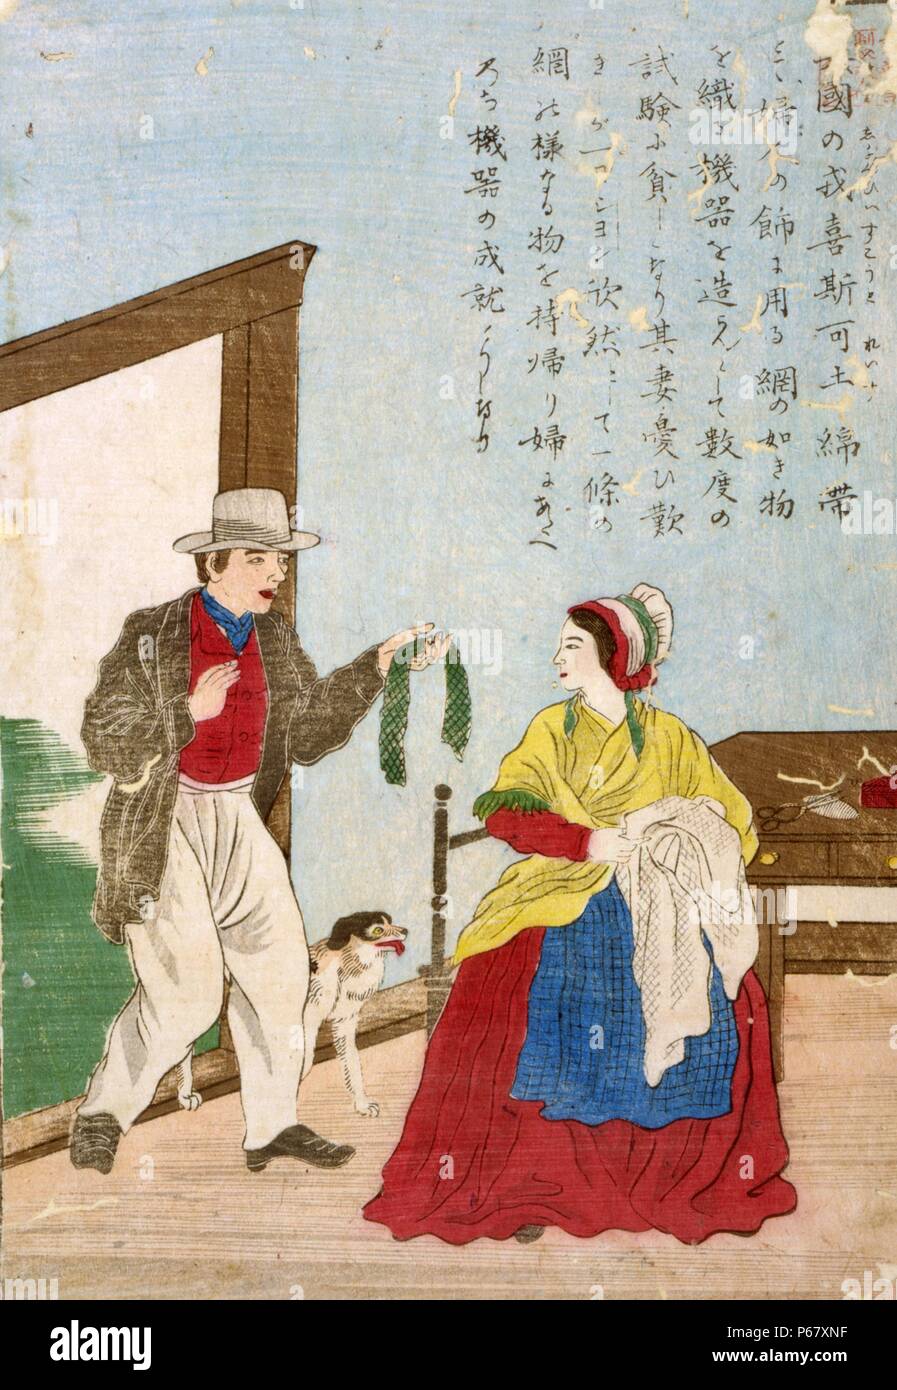 Japanische hand farbige Holzschnitt. Bild zeigt John heathcoat, der Erfinder der Strickmaschine, zeigt der Erfolg der Maschine zu seiner Frau. Zwischen 1850 und 1900 erstellt. Stockfoto